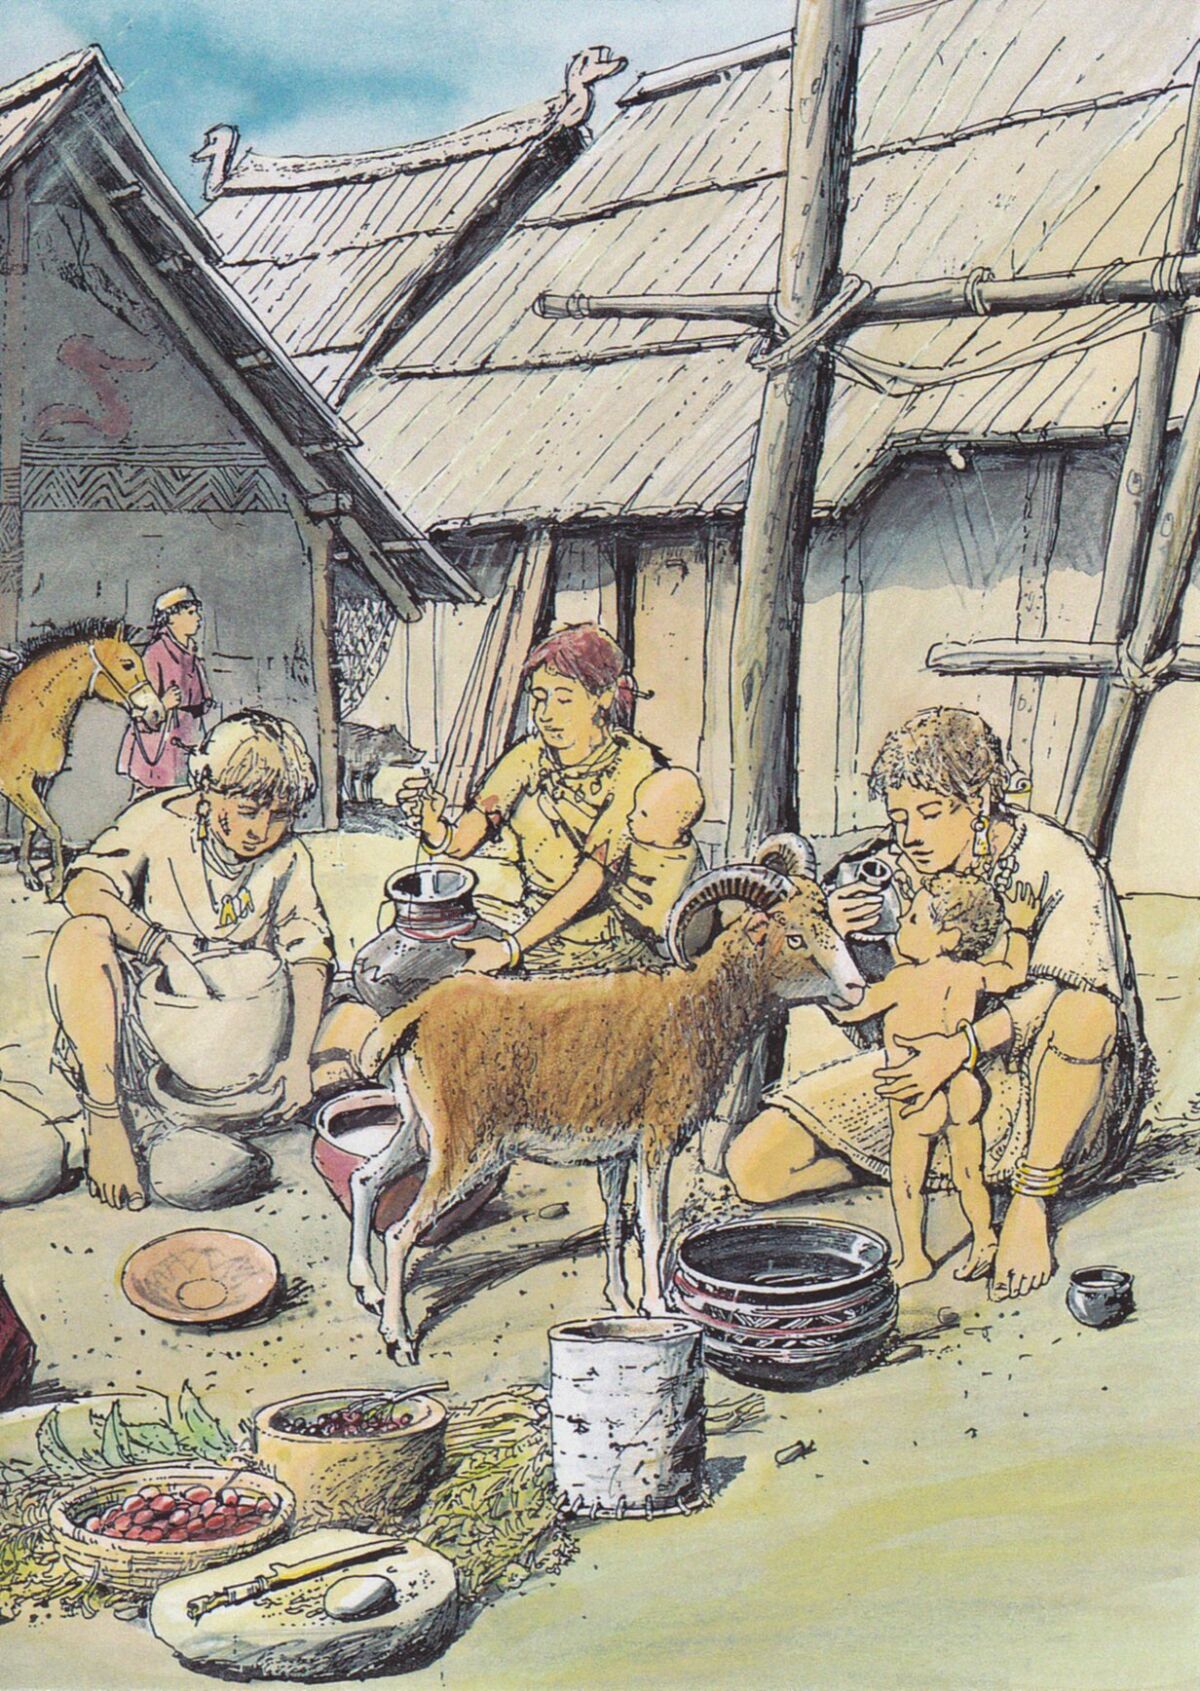 A prehistoric family scene